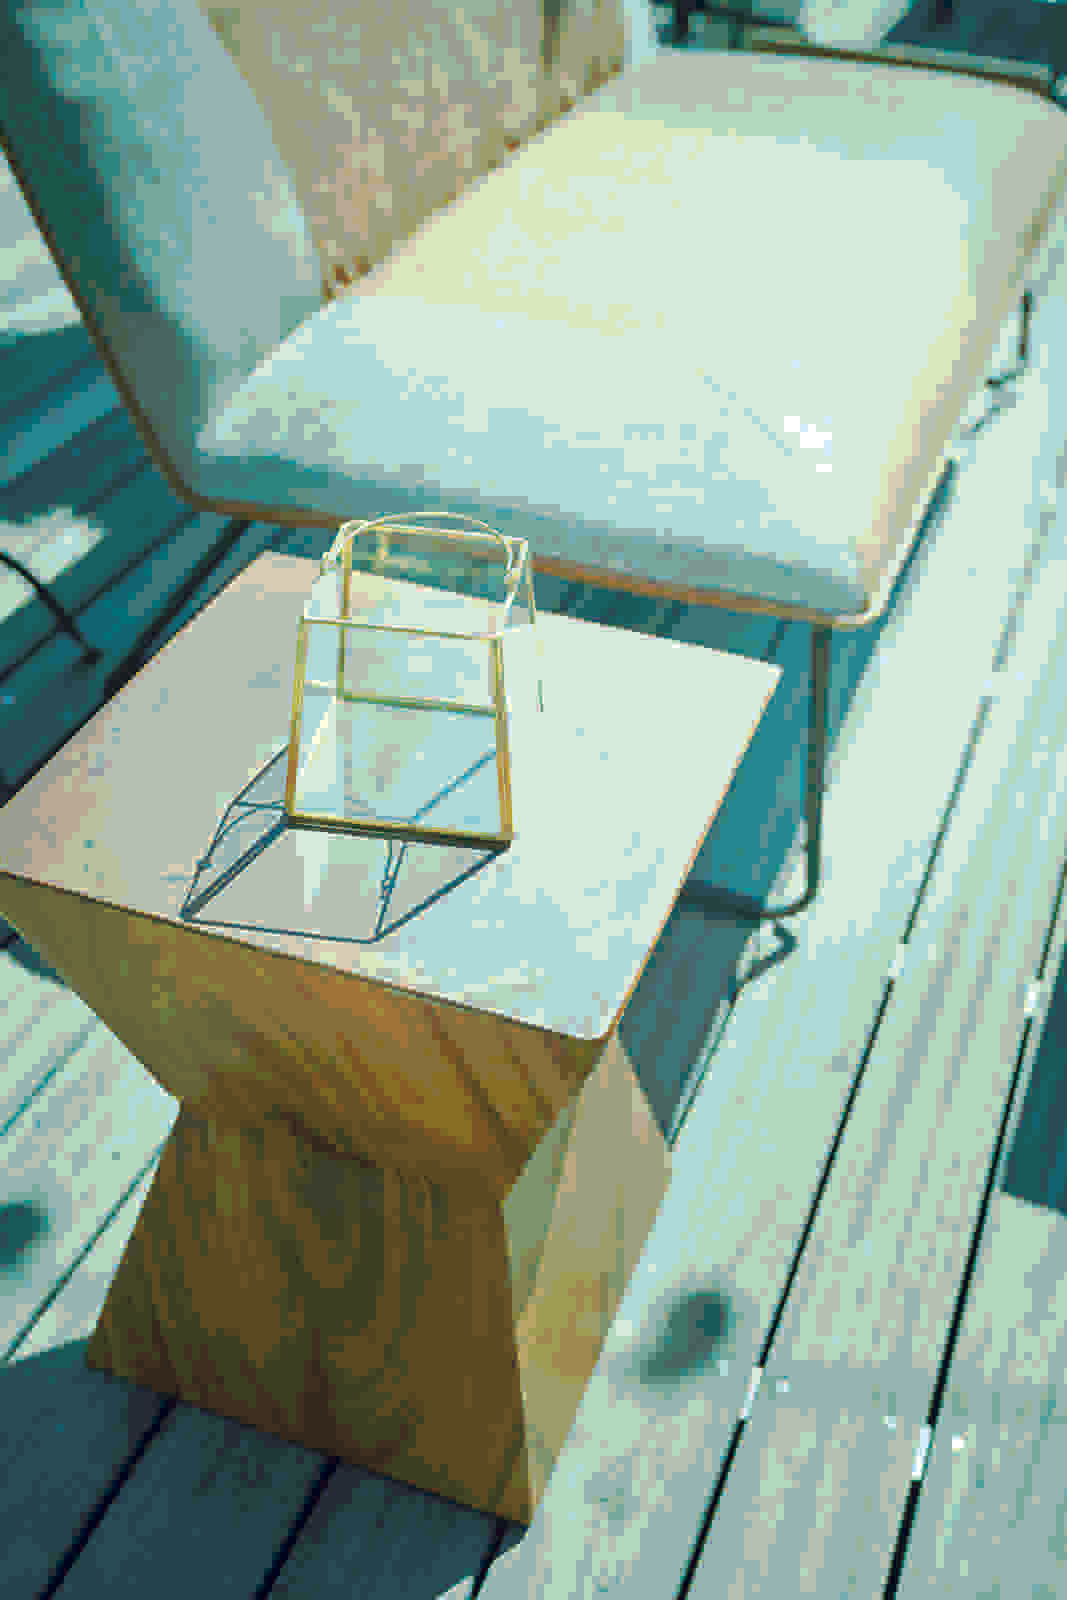 スツール 椅子 チェア ローチェア サイドテーブル 台形面 天然木 古材 北欧 モンキーポッド ウッド 小物置き 花台 フラワースタンド おしゃれ インテリア リビング 玄関